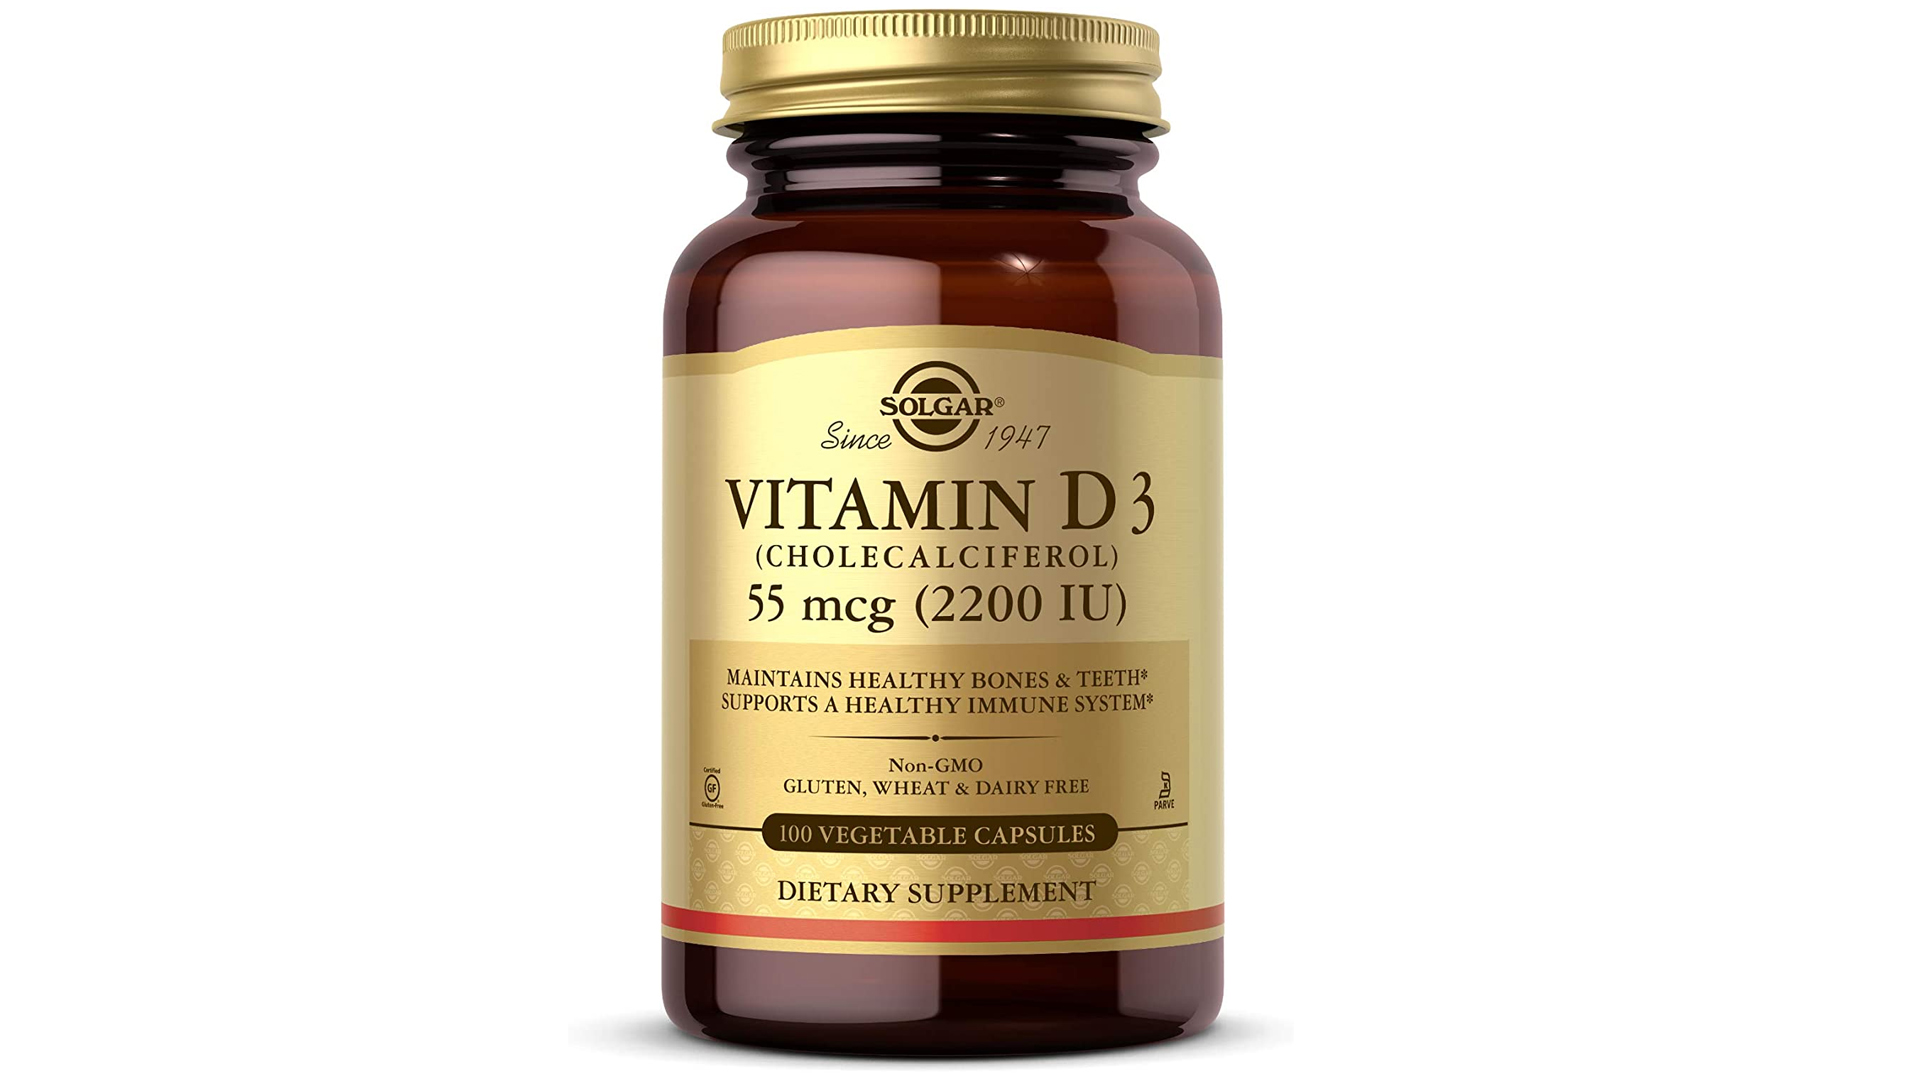 Solgar vitamin D3 supplement